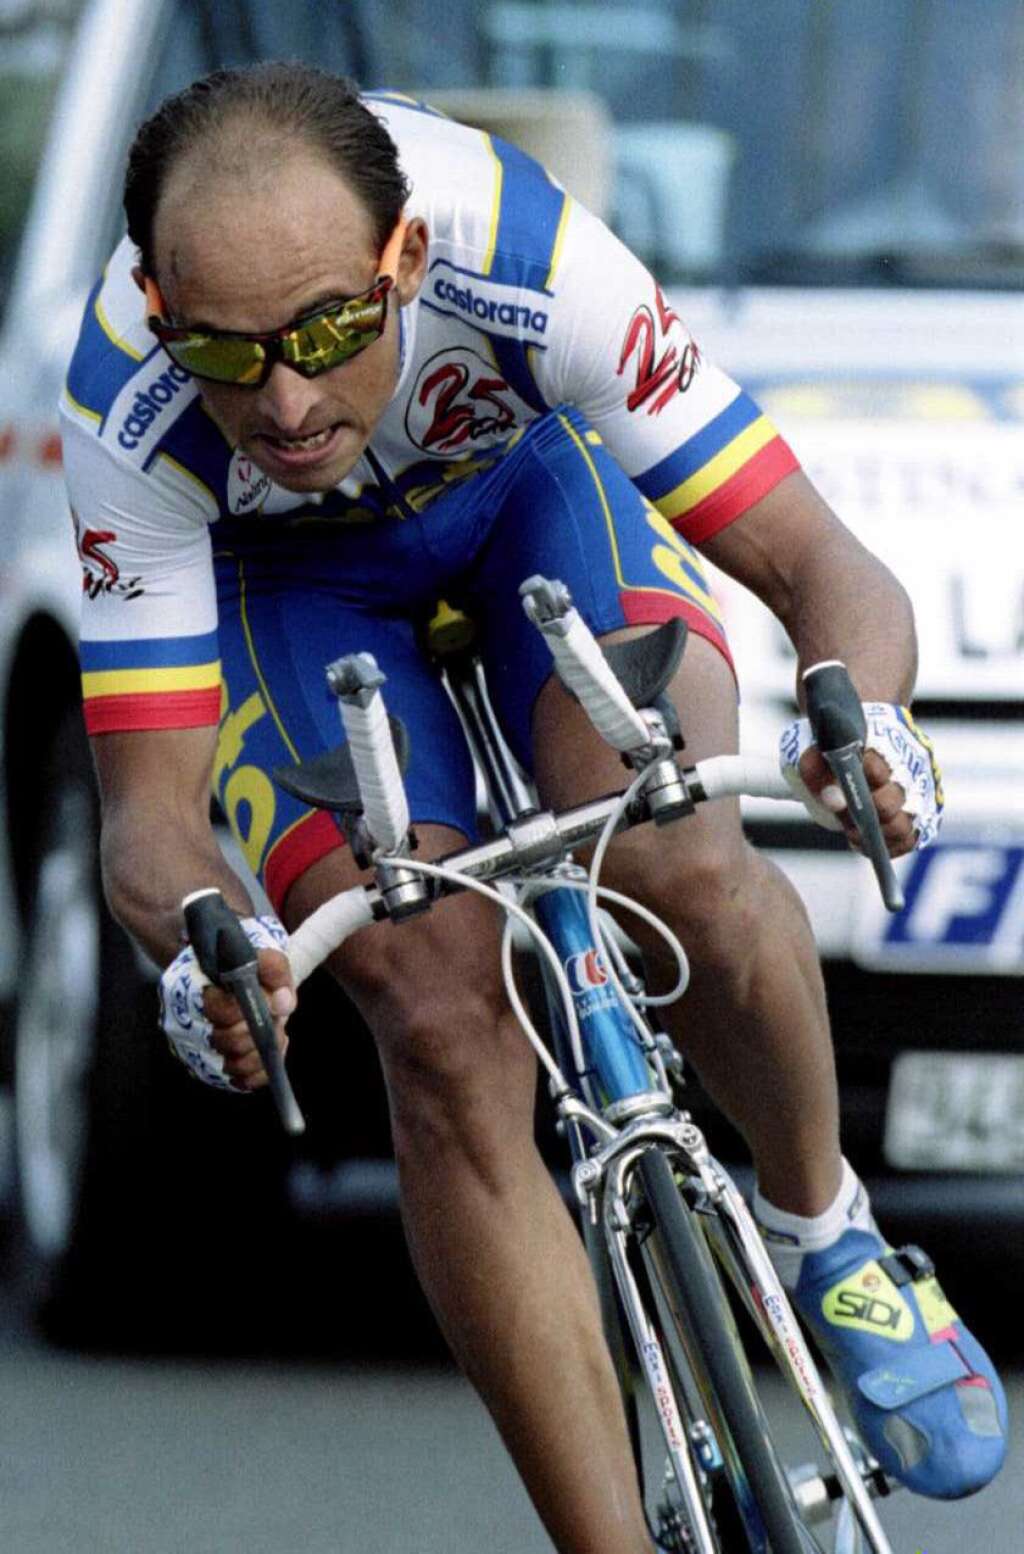 3 août - Armand de las Cuevas - <p>L'ancien cycliste Armand de las Cuevas, champion de France en 1991, est mort à l'âge de 50 ans, a annoncé ce vendredi 3 août <a href="http://www.uncp.net/" target="_blank">l'Union nationale des cyclistes professionnels</a> (UNCP) par la voix de son président Pascal Chanteur.</p>  <p>Il avait remporté le contre-la-montre couru <a href="http://www.giroditalia.it/it/" target="_blank">le premier jour du Giro</a>-1994 et le Critérium du Dauphiné en 1998. Malgré ces victoires, il n'avait pas pu participé au <a href="https://www.huffingtonpost.fr/news/tour-de-france/" target="_blank">Tour de France</a> marqué par le scandale de <a href="https://www.huffingtonpost.fr/news/dopage/" target="_blank">dopage</a> Festina.</p>  <p><strong>» Lire notre article complet <a href="https://www.huffingtonpost.fr/2018/08/03/le-cycliste-armand-de-las-cuevas-est-mort_a_23495371/?utm_hp_ref=fr-sport">en cliquant ici</a></strong></p>